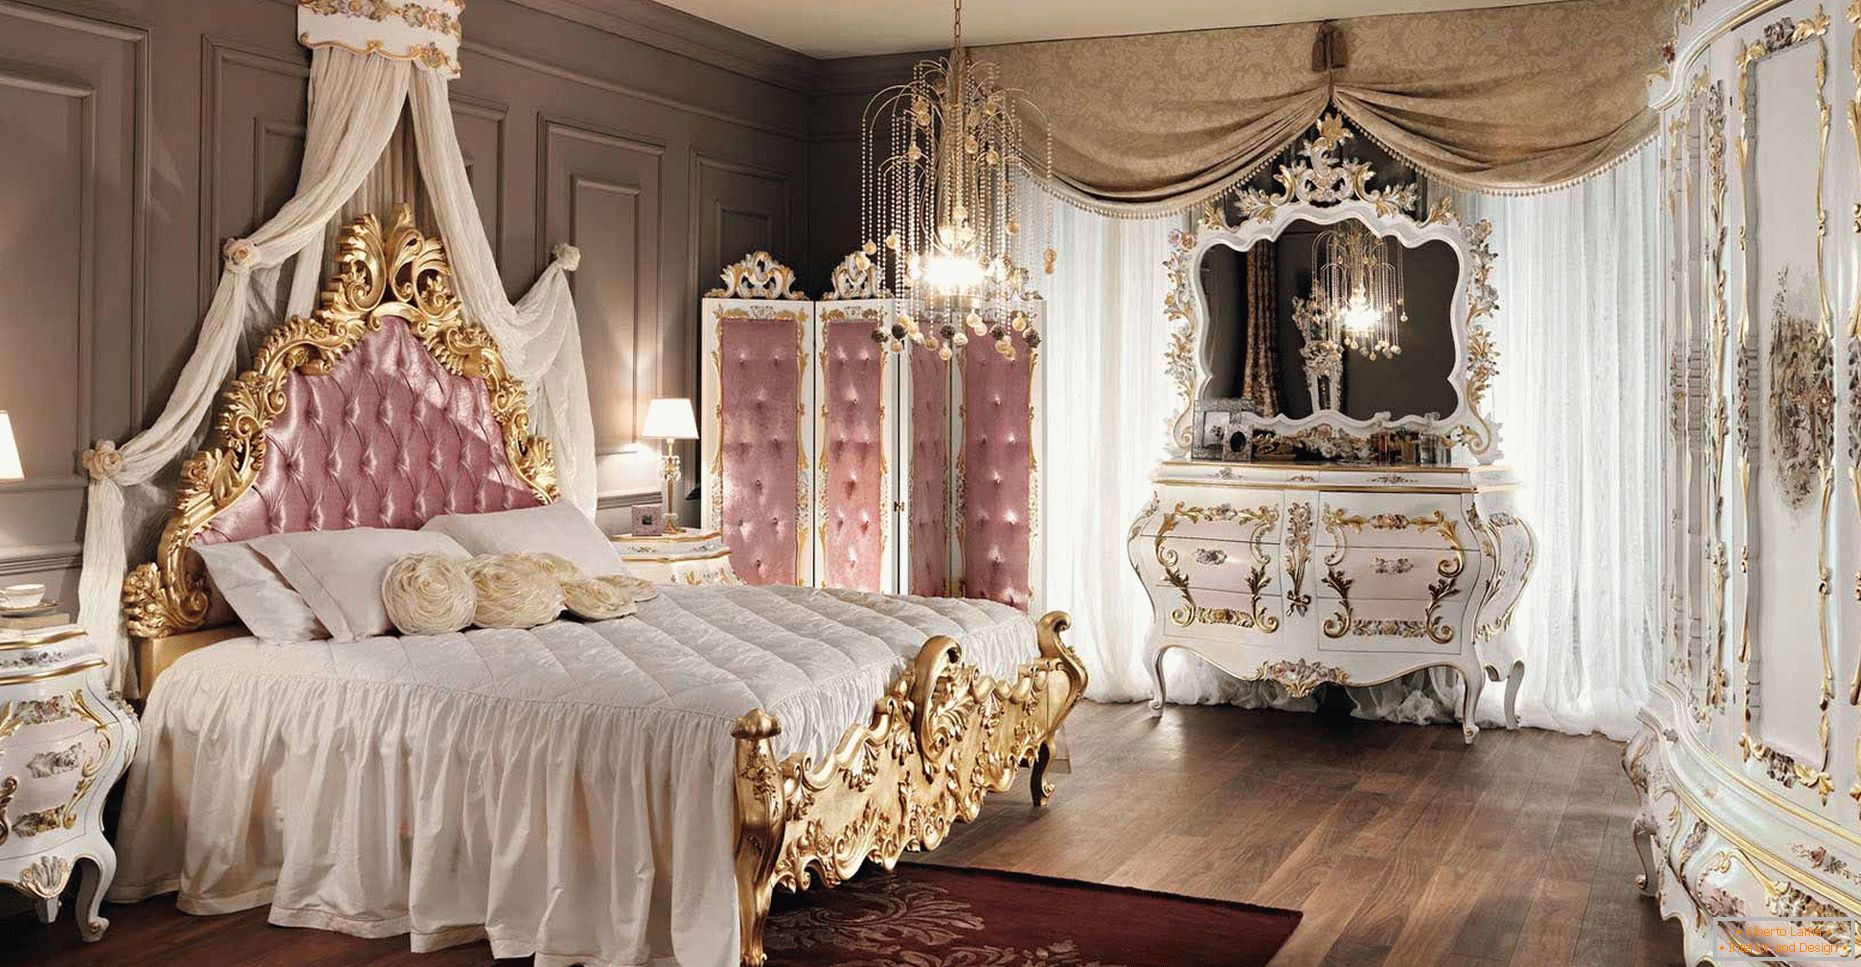 Una camera da letto pomposa e maestosa per una giovane donna.